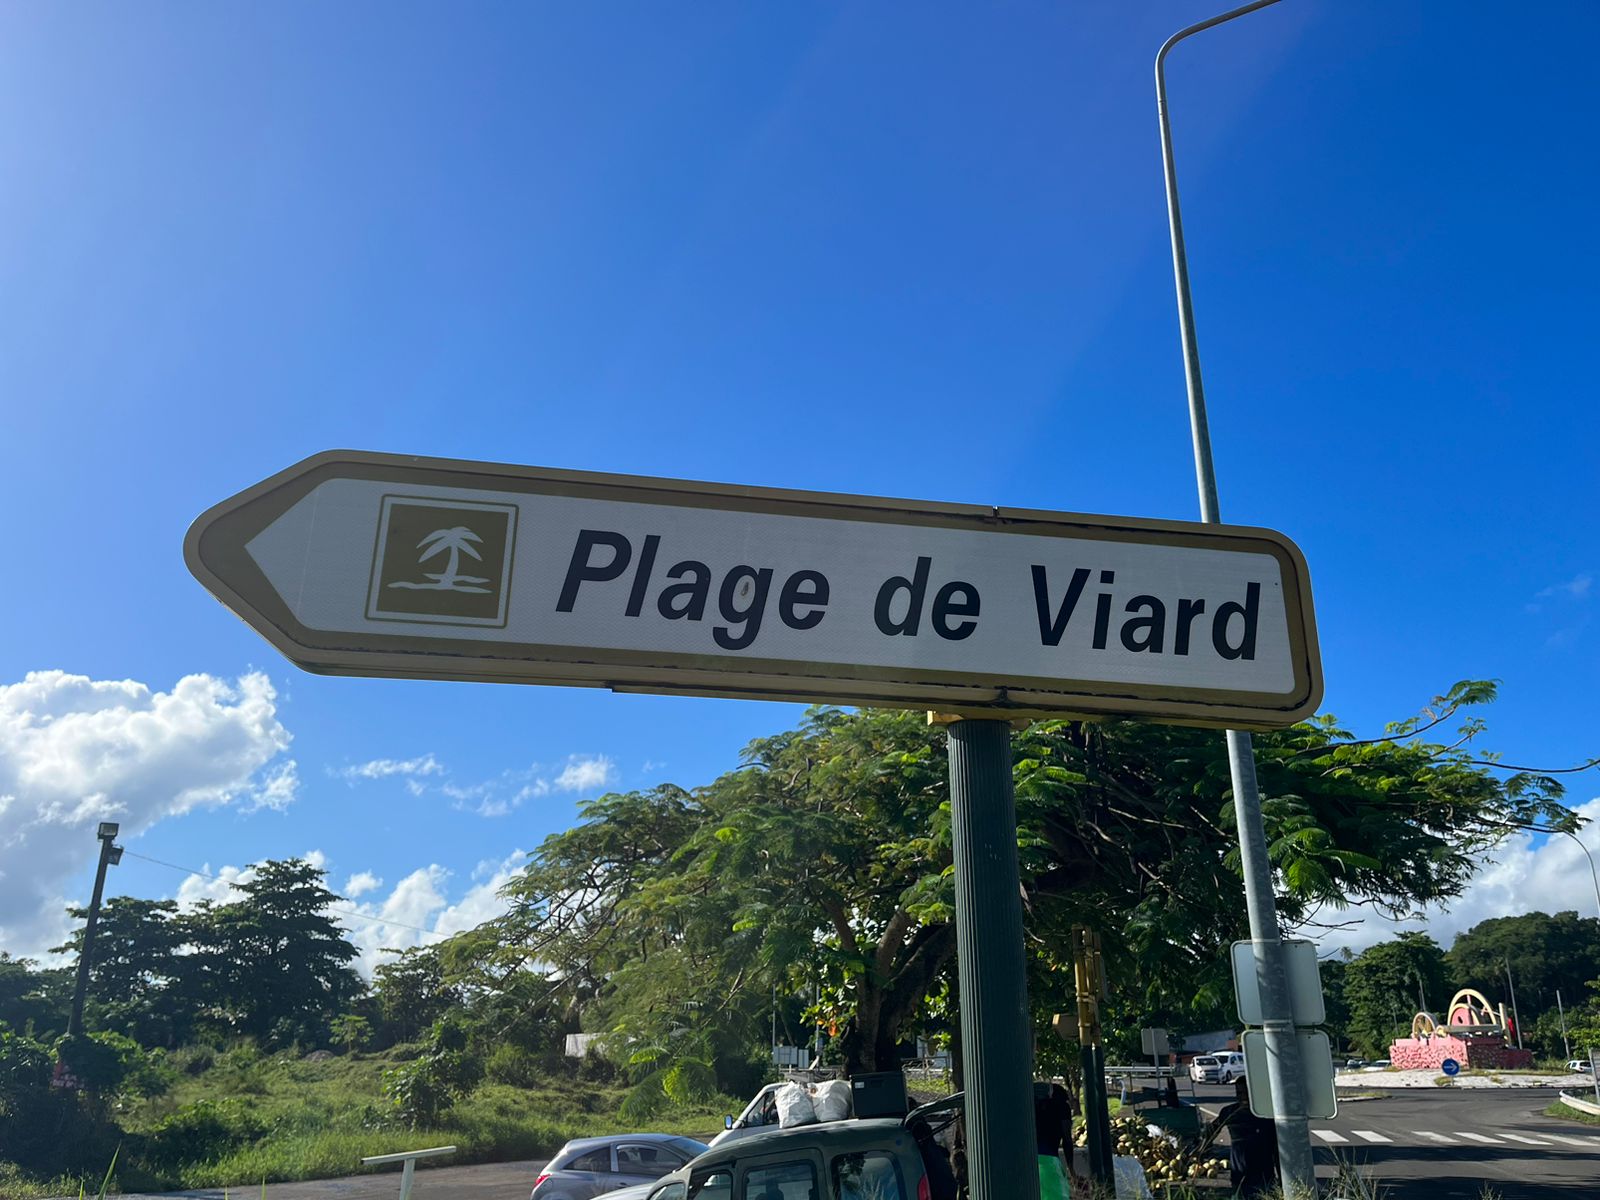     Cadavres à Petit-Bourg et Goyave : le lien entre les deux affaires est confirmé

